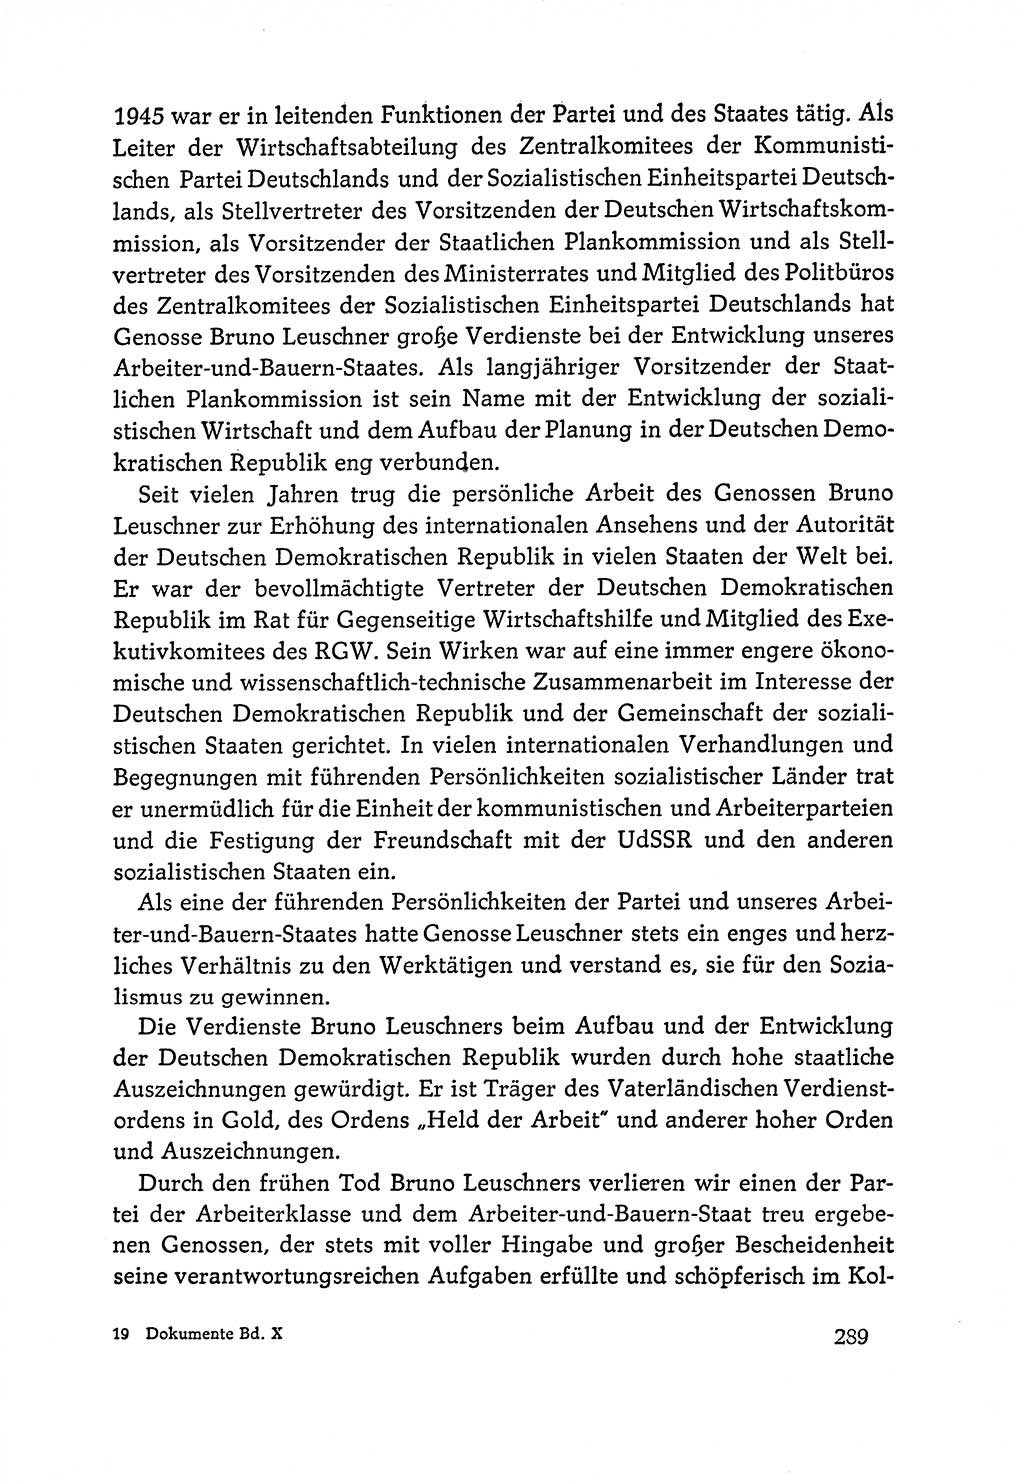 Dokumente der Sozialistischen Einheitspartei Deutschlands (SED) [Deutsche Demokratische Republik (DDR)] 1964-1965, Seite 289 (Dok. SED DDR 1964-1965, S. 289)